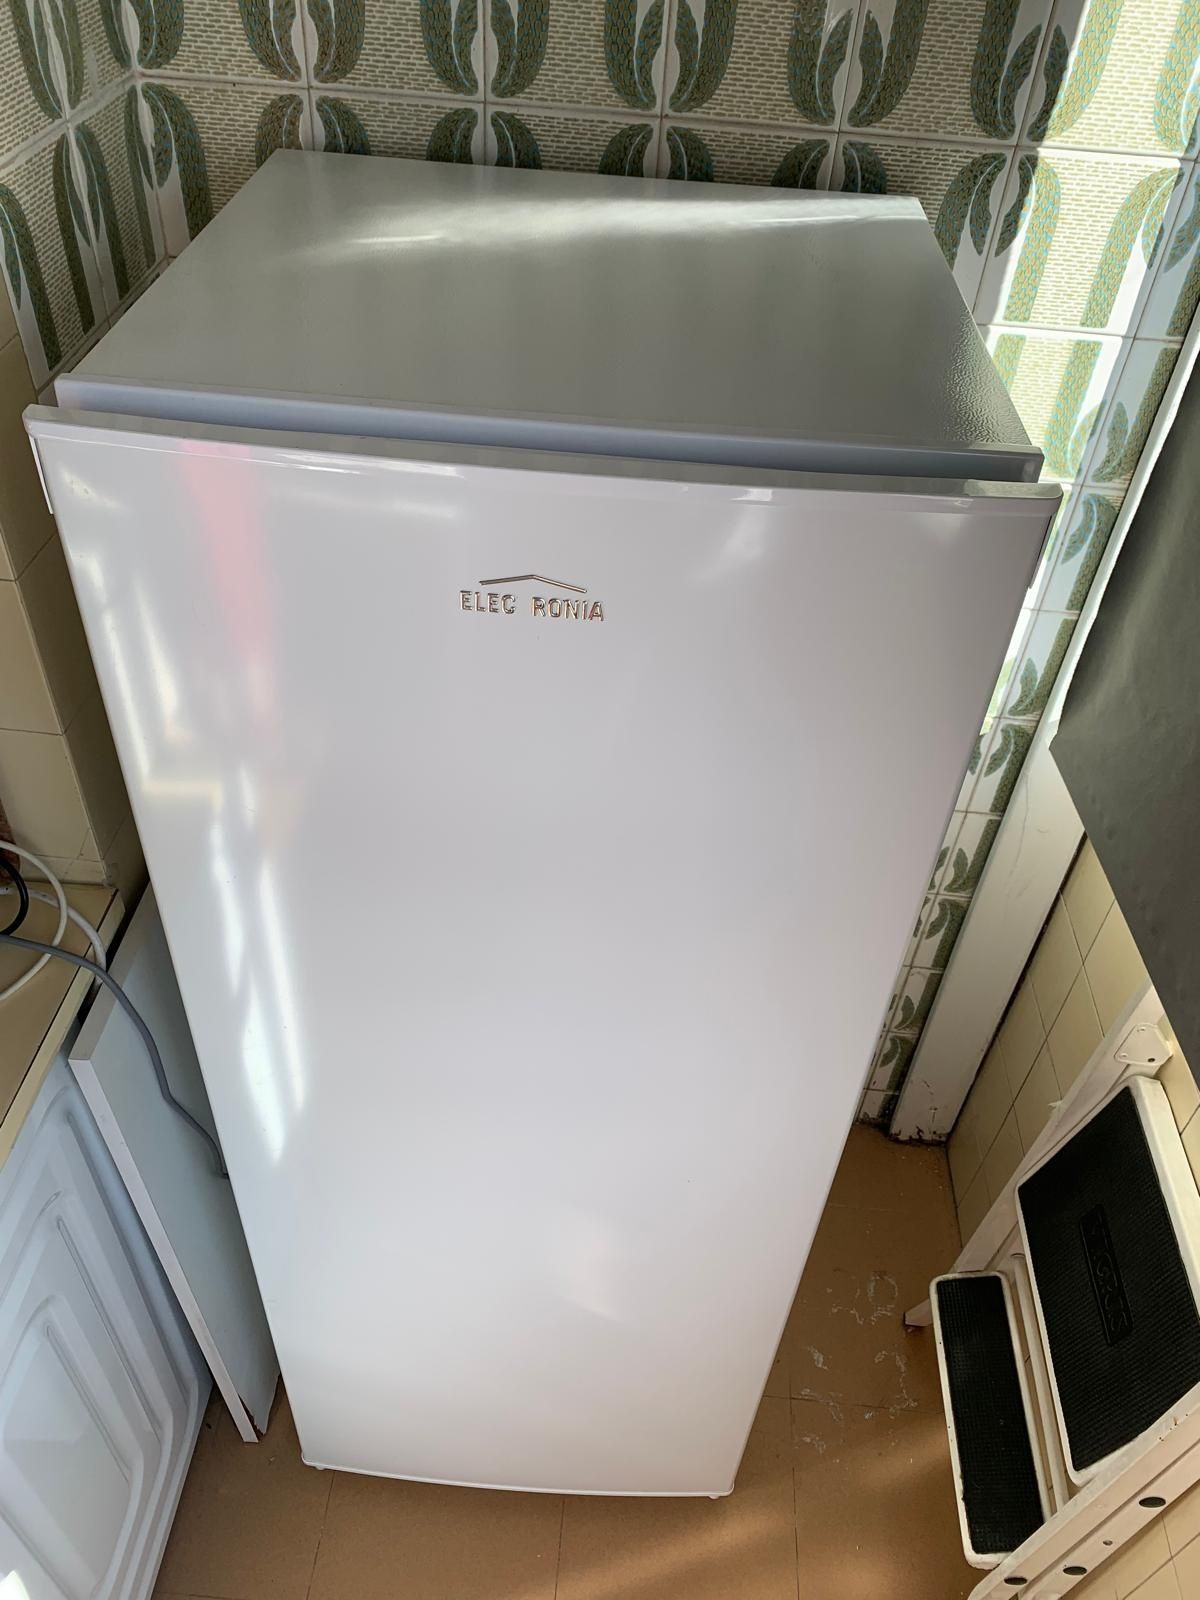 Arca frigorífica Electronia praticamente nova